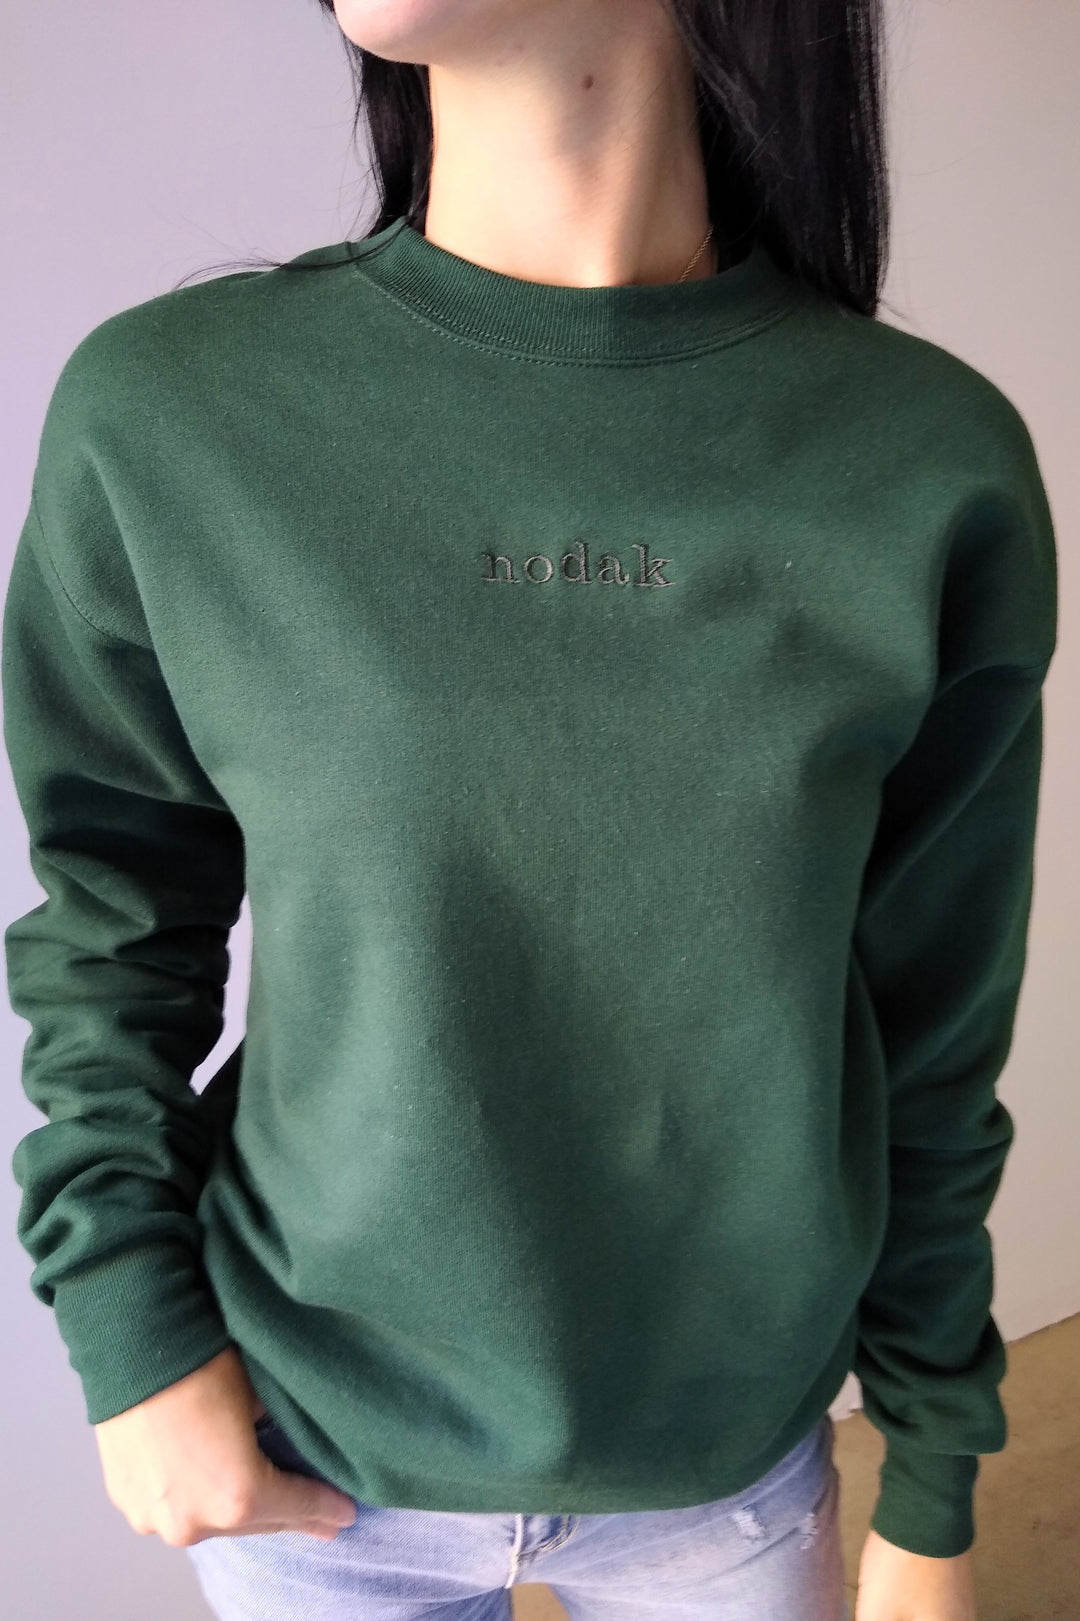 Nodak Forest Green Embroidered Crewneck Sweatshirt